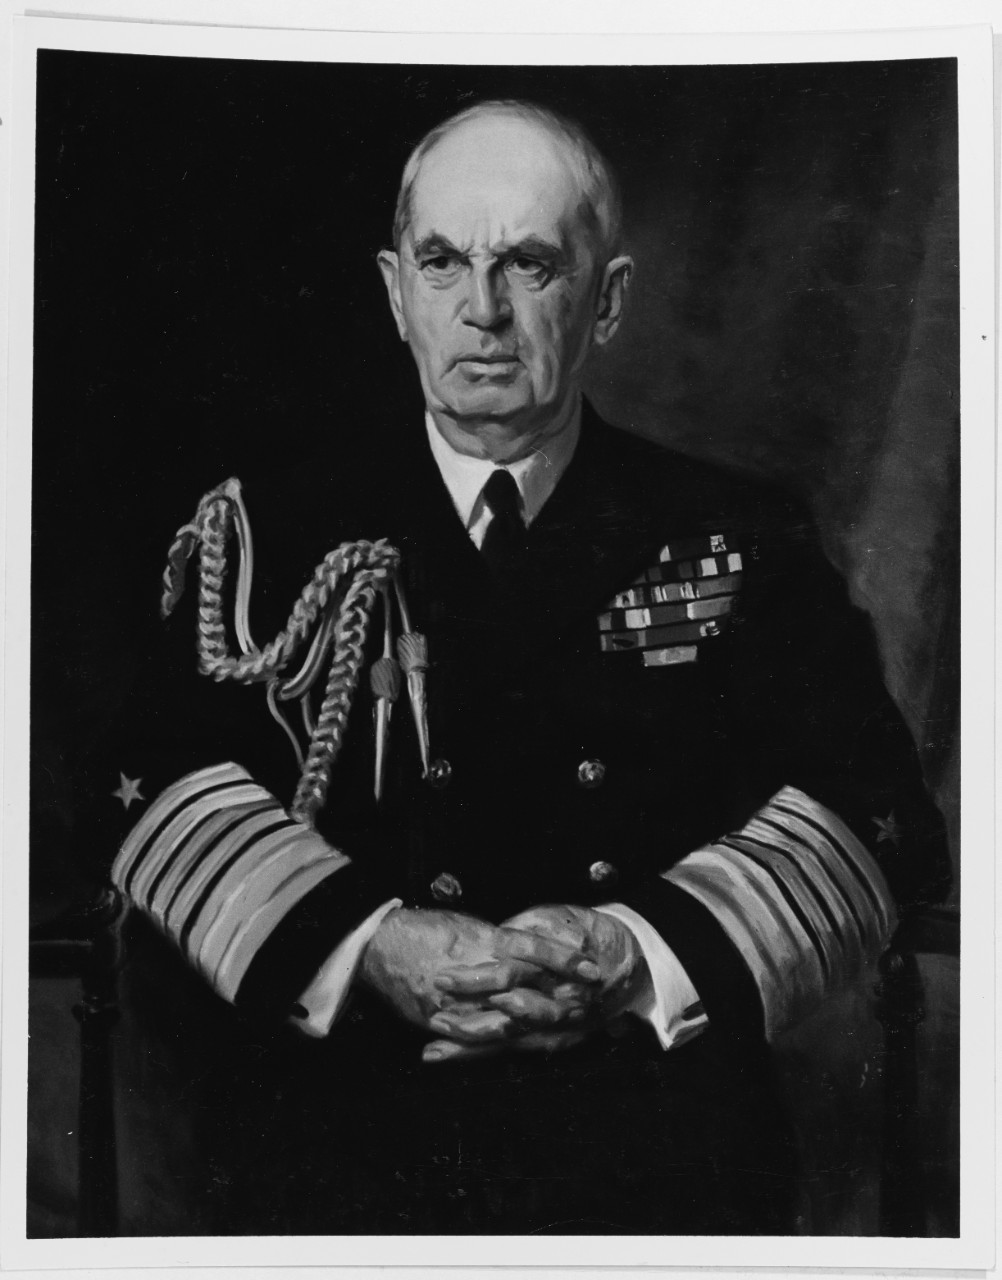 Fleet Admiral William D. Leahy, USN